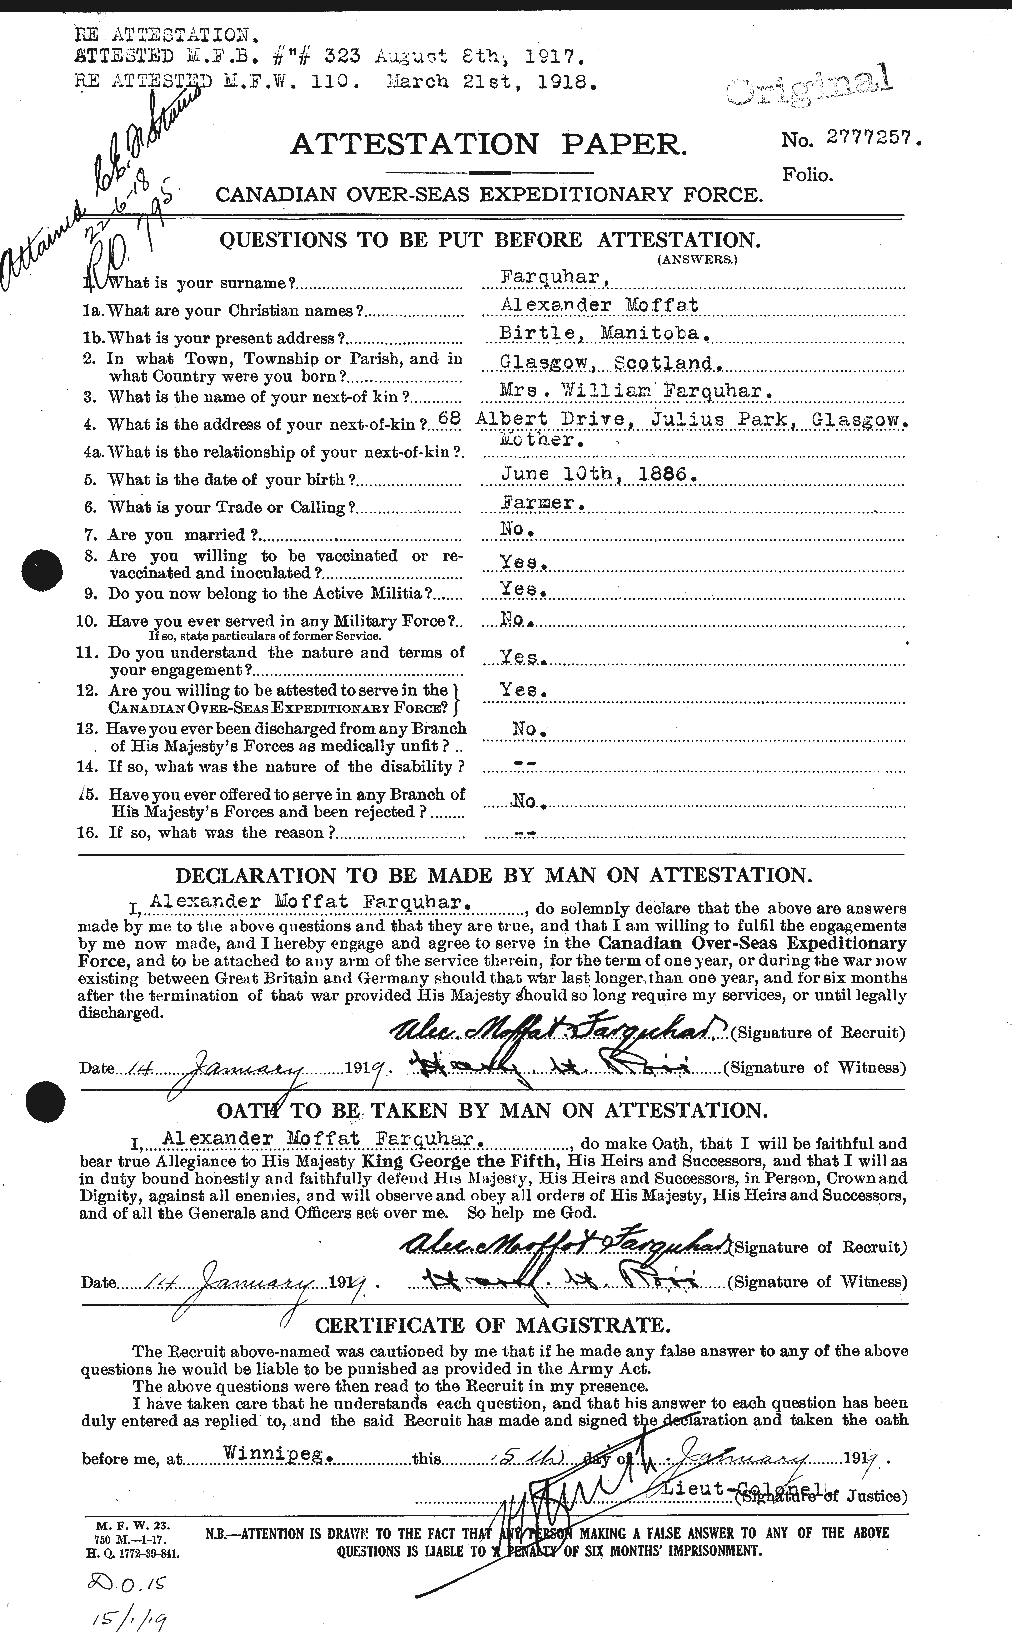 Dossiers du Personnel de la Première Guerre mondiale - CEC 318759a